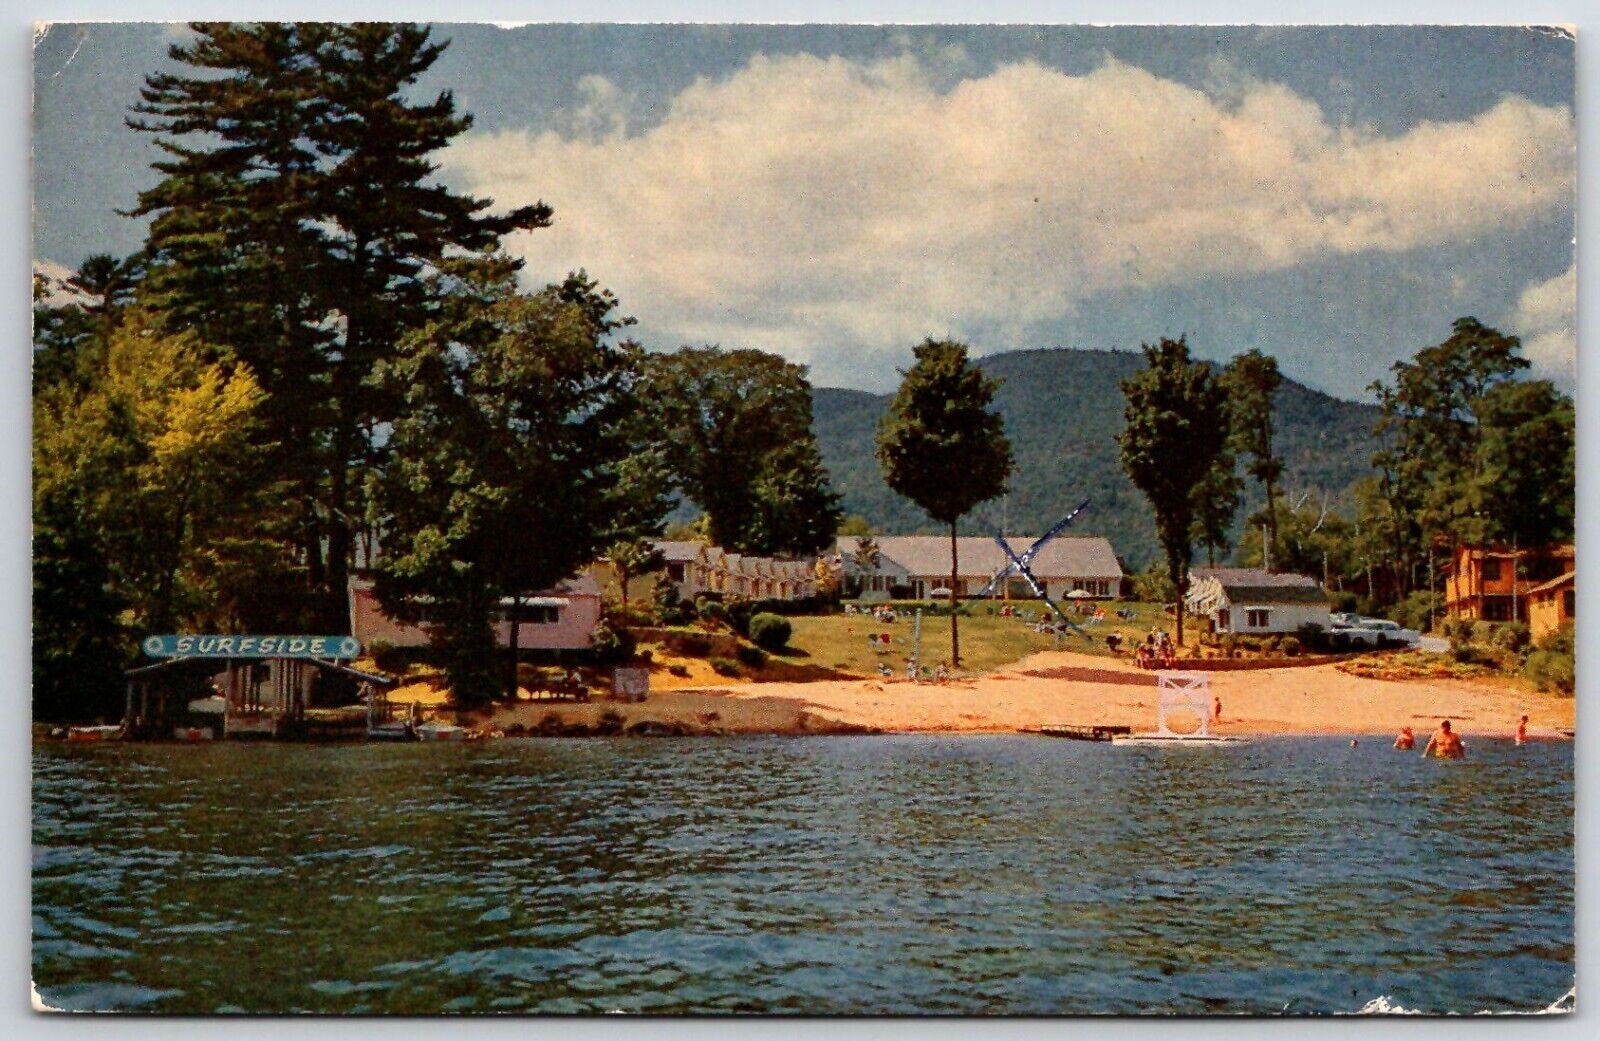 Vintage Postcard - Surfside Motel & Cottages - U.S 9 - Lake George Village NY